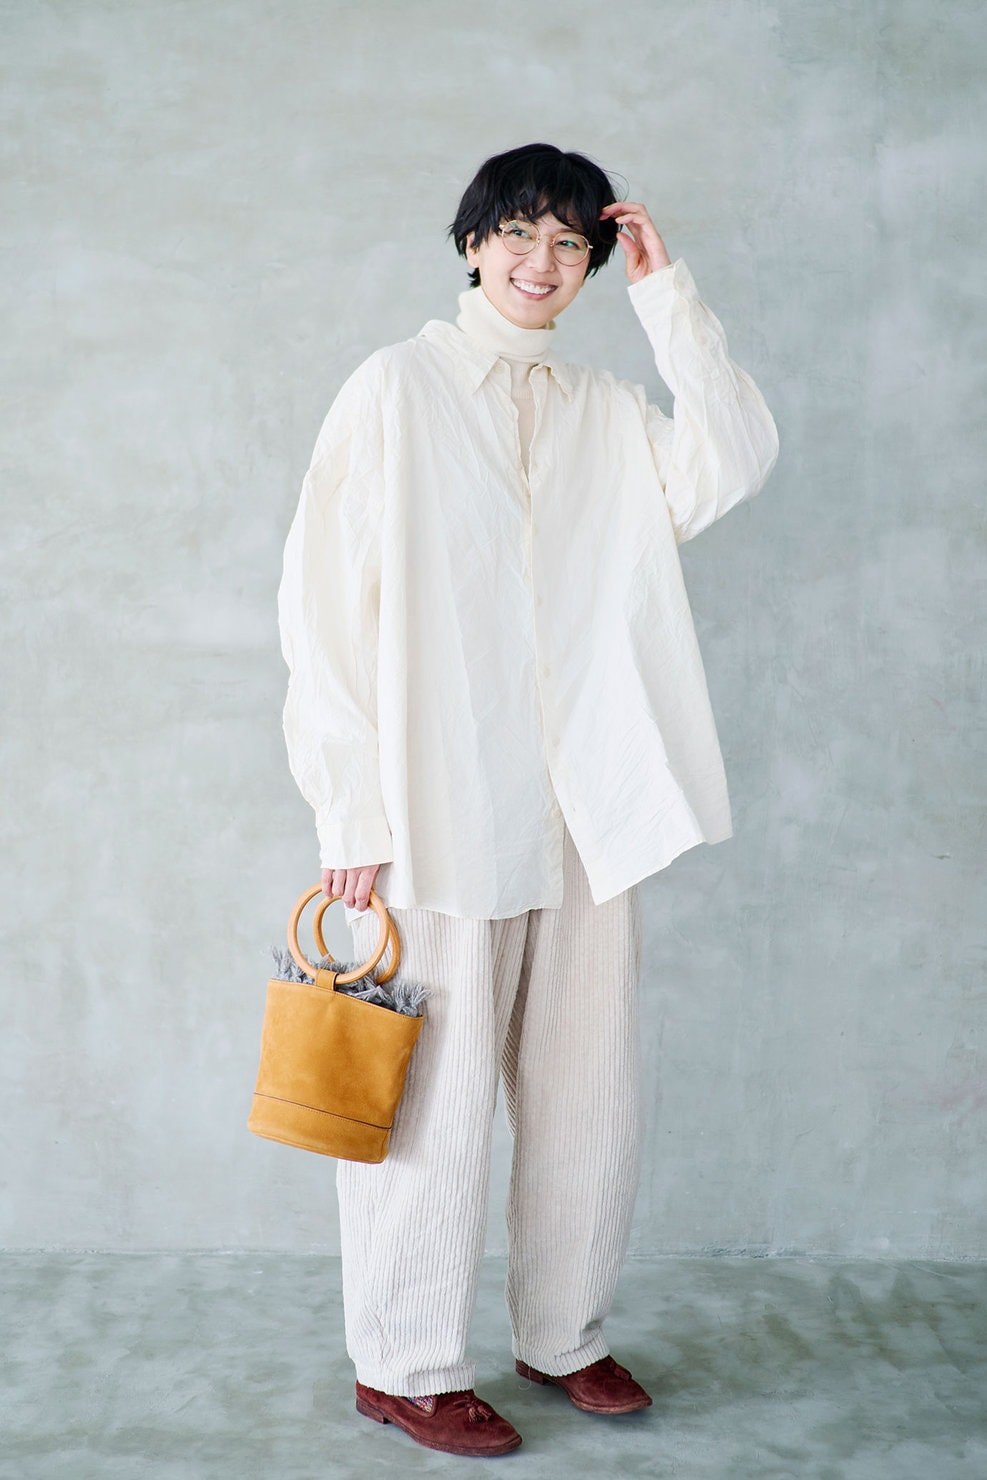 俳優・モデル 菊池亜希子さんの私服ファッションスナップ。軽やかな白のワントーンコーデを小物でクラシカルに